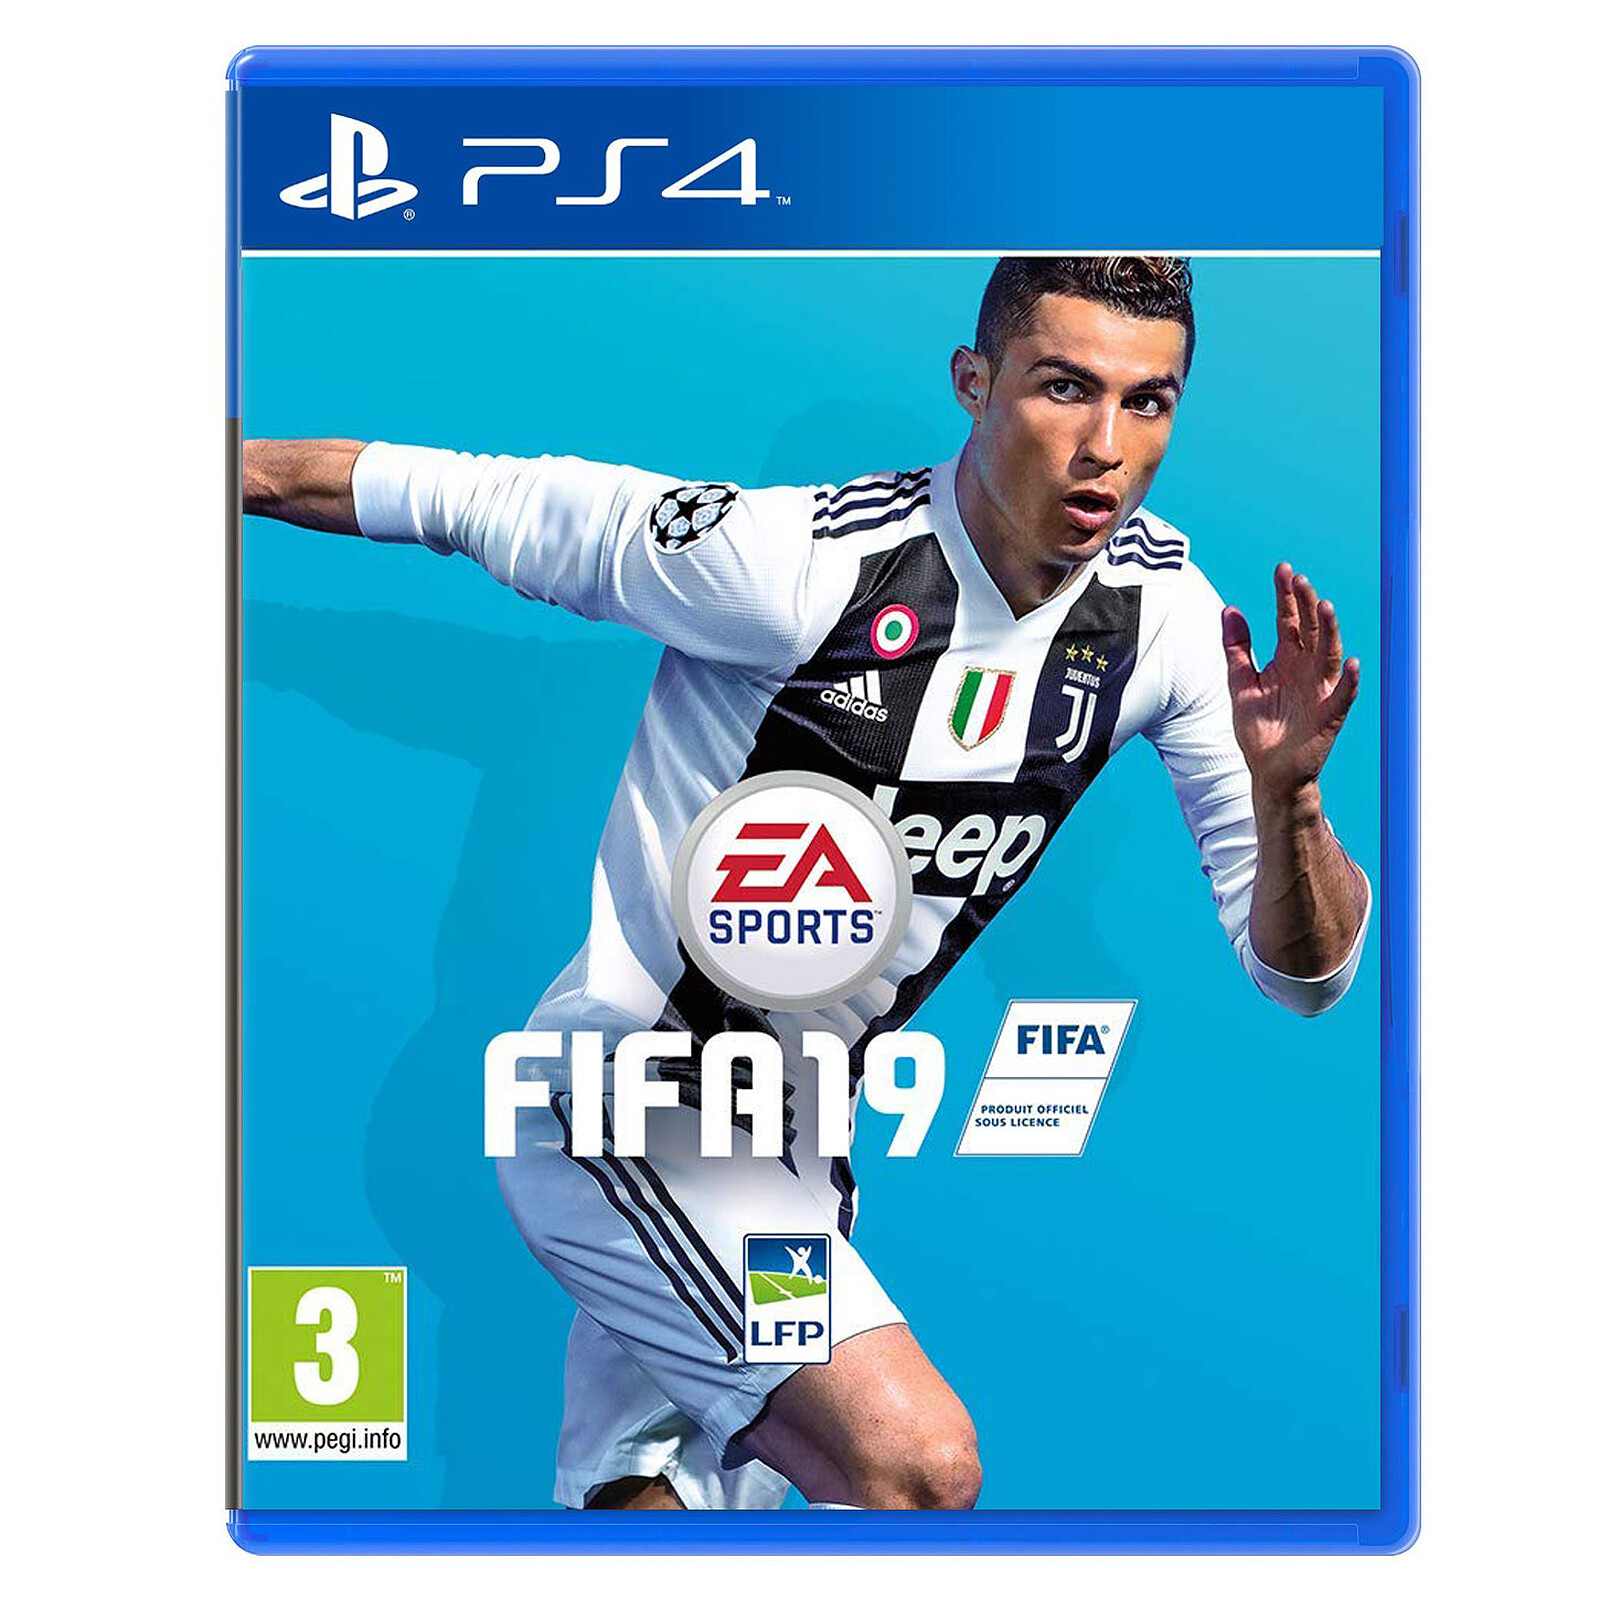 FIFA 19 (PS4) - Arts on LDLC | Holy Moley